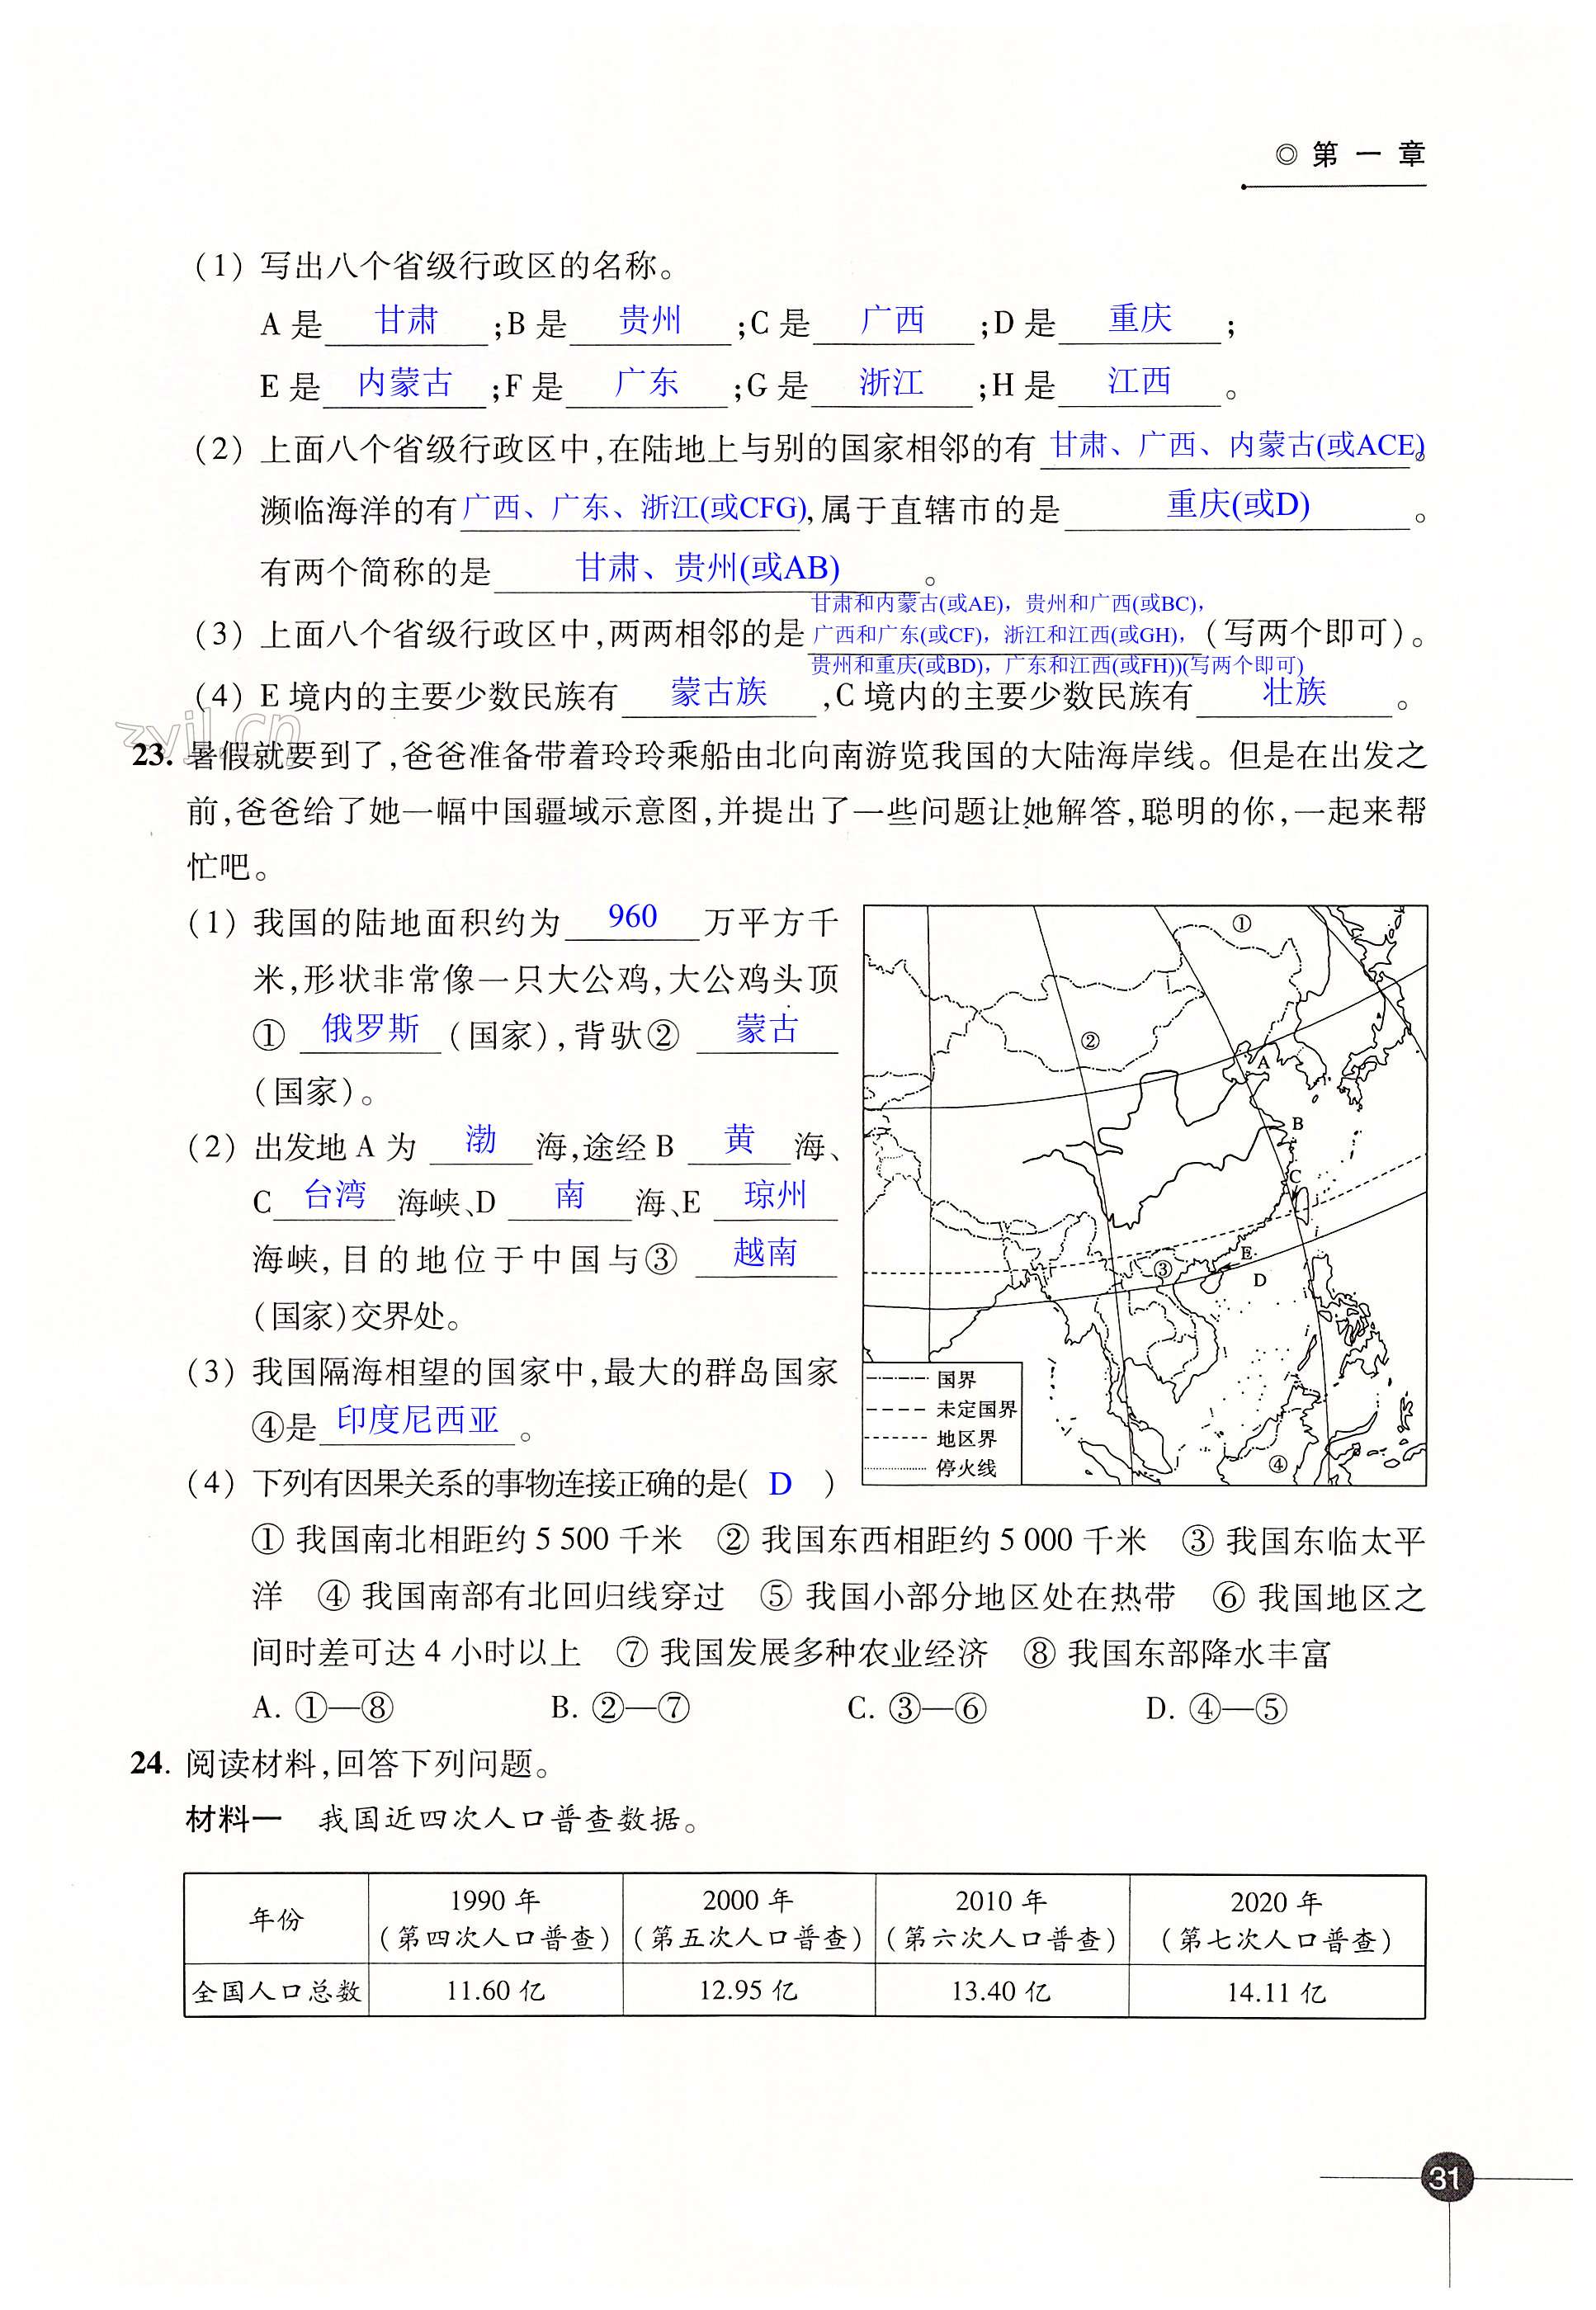 第一章 中国的疆域与人口 - 第31页